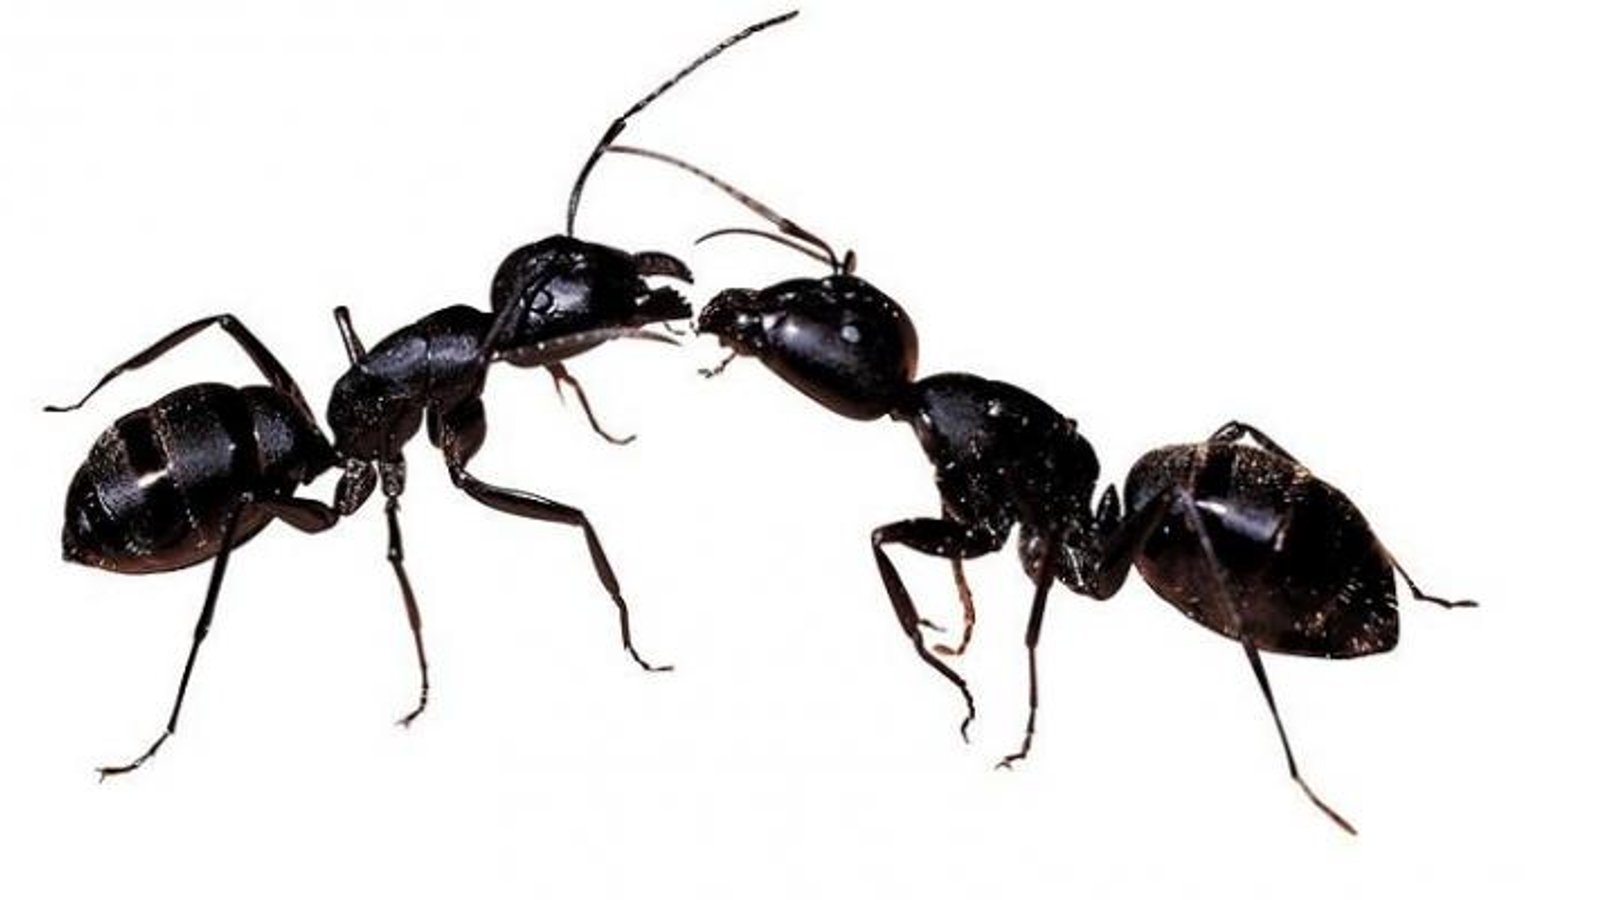 5 trucs pour se débarrasser des fourmis!